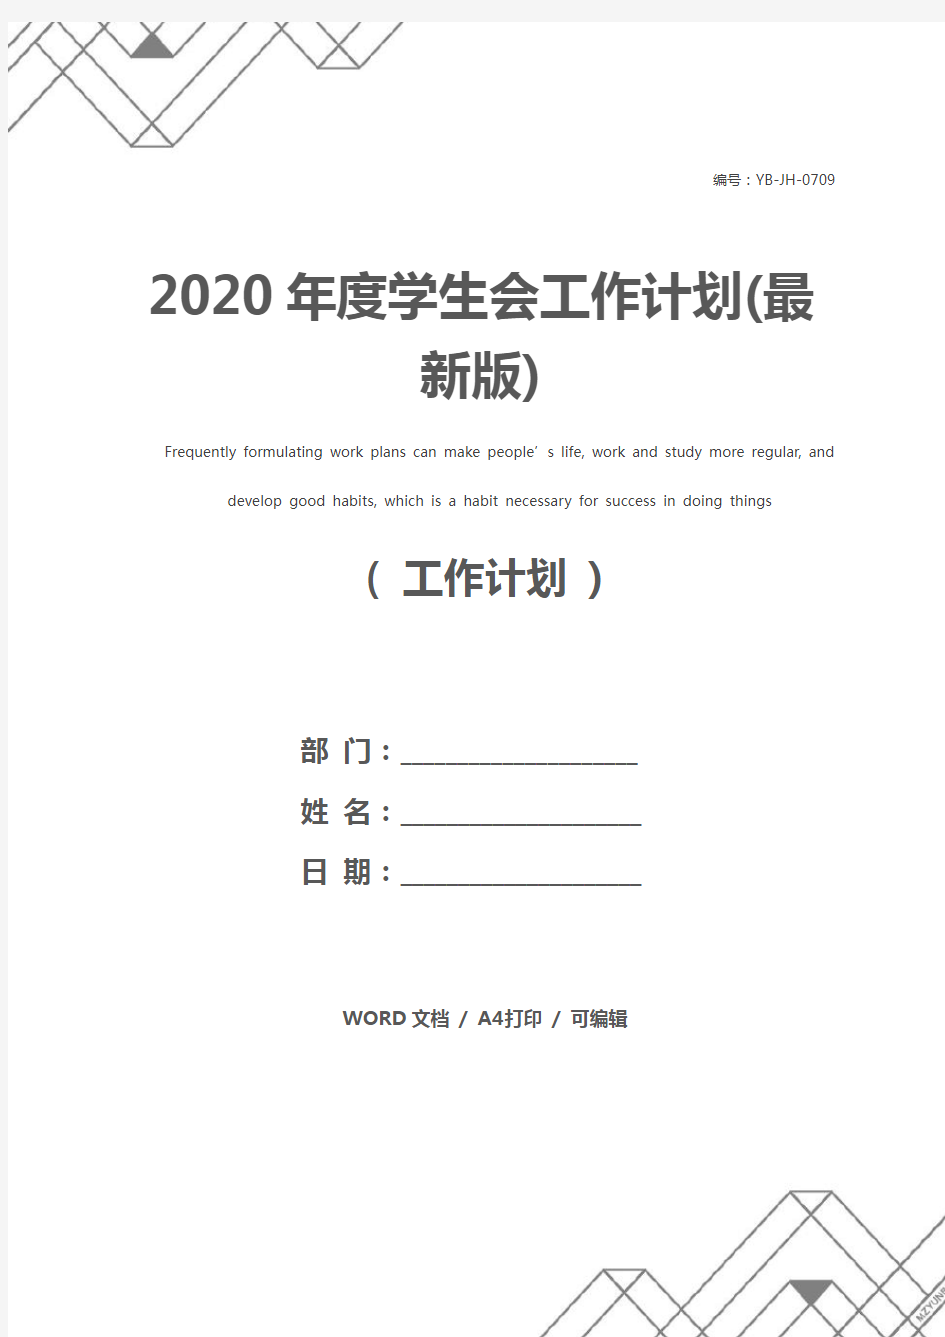 2020年度学生会工作计划(最新版)